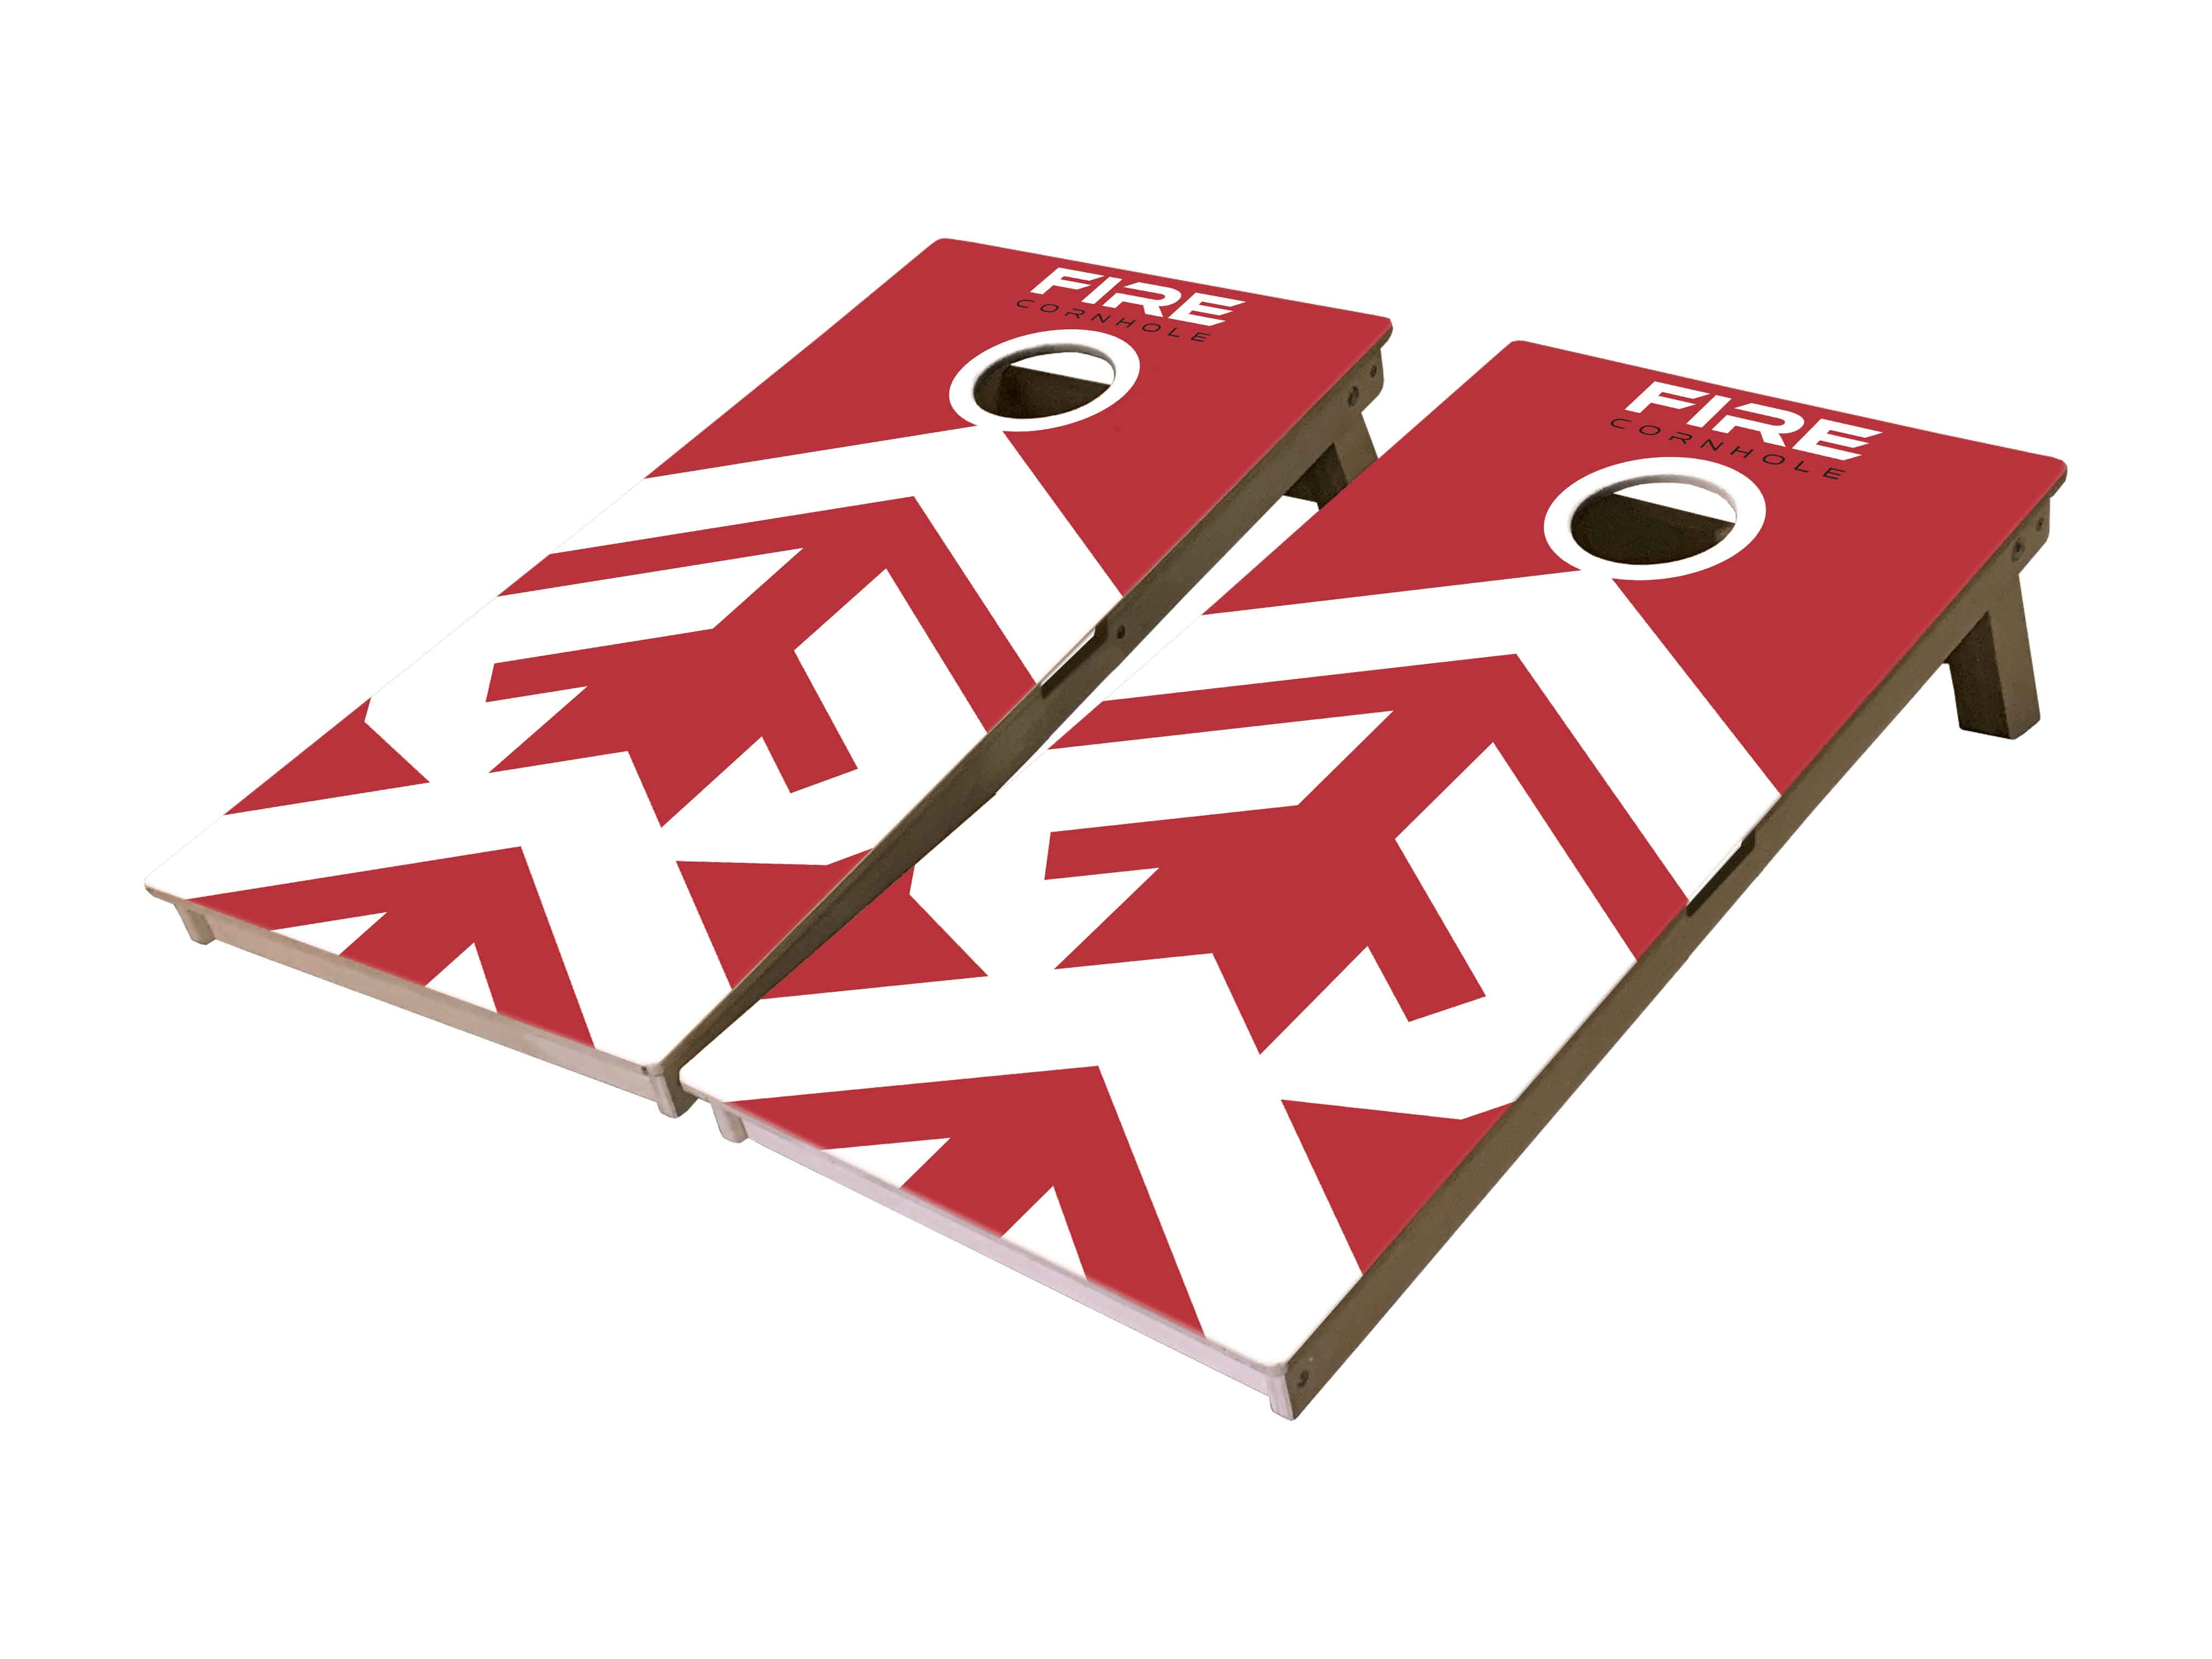 Fire Cornhole Mini Cornhole Boards with design in red and white